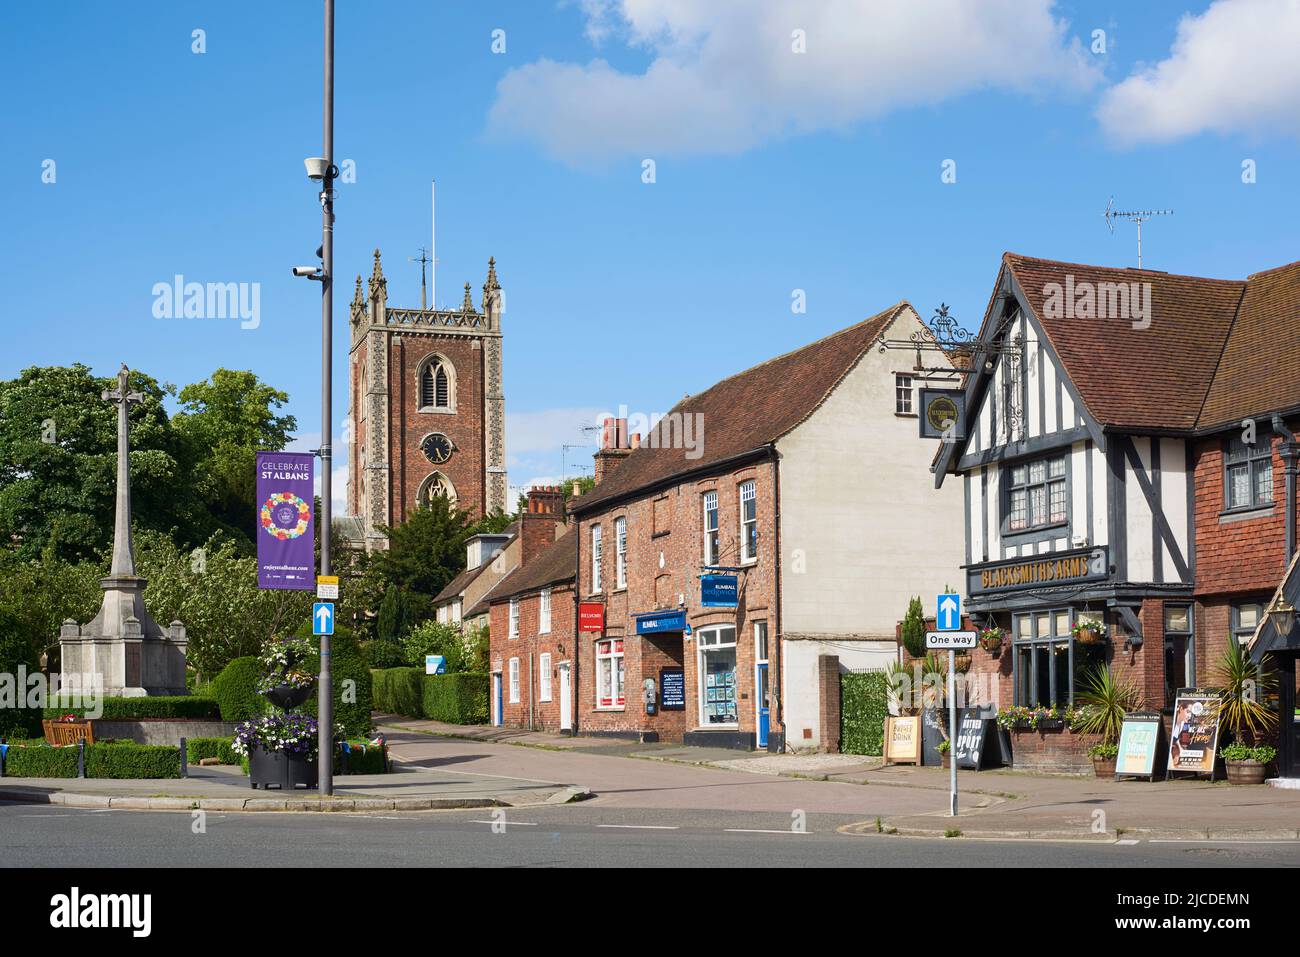 St Peter's Street y el monumento conmemorativo de la guerra en la ciudad de St Albans, Hertfordshire, sudeste de Inglaterra, con la torre de la iglesia de San Pedro en el fondo Foto de stock